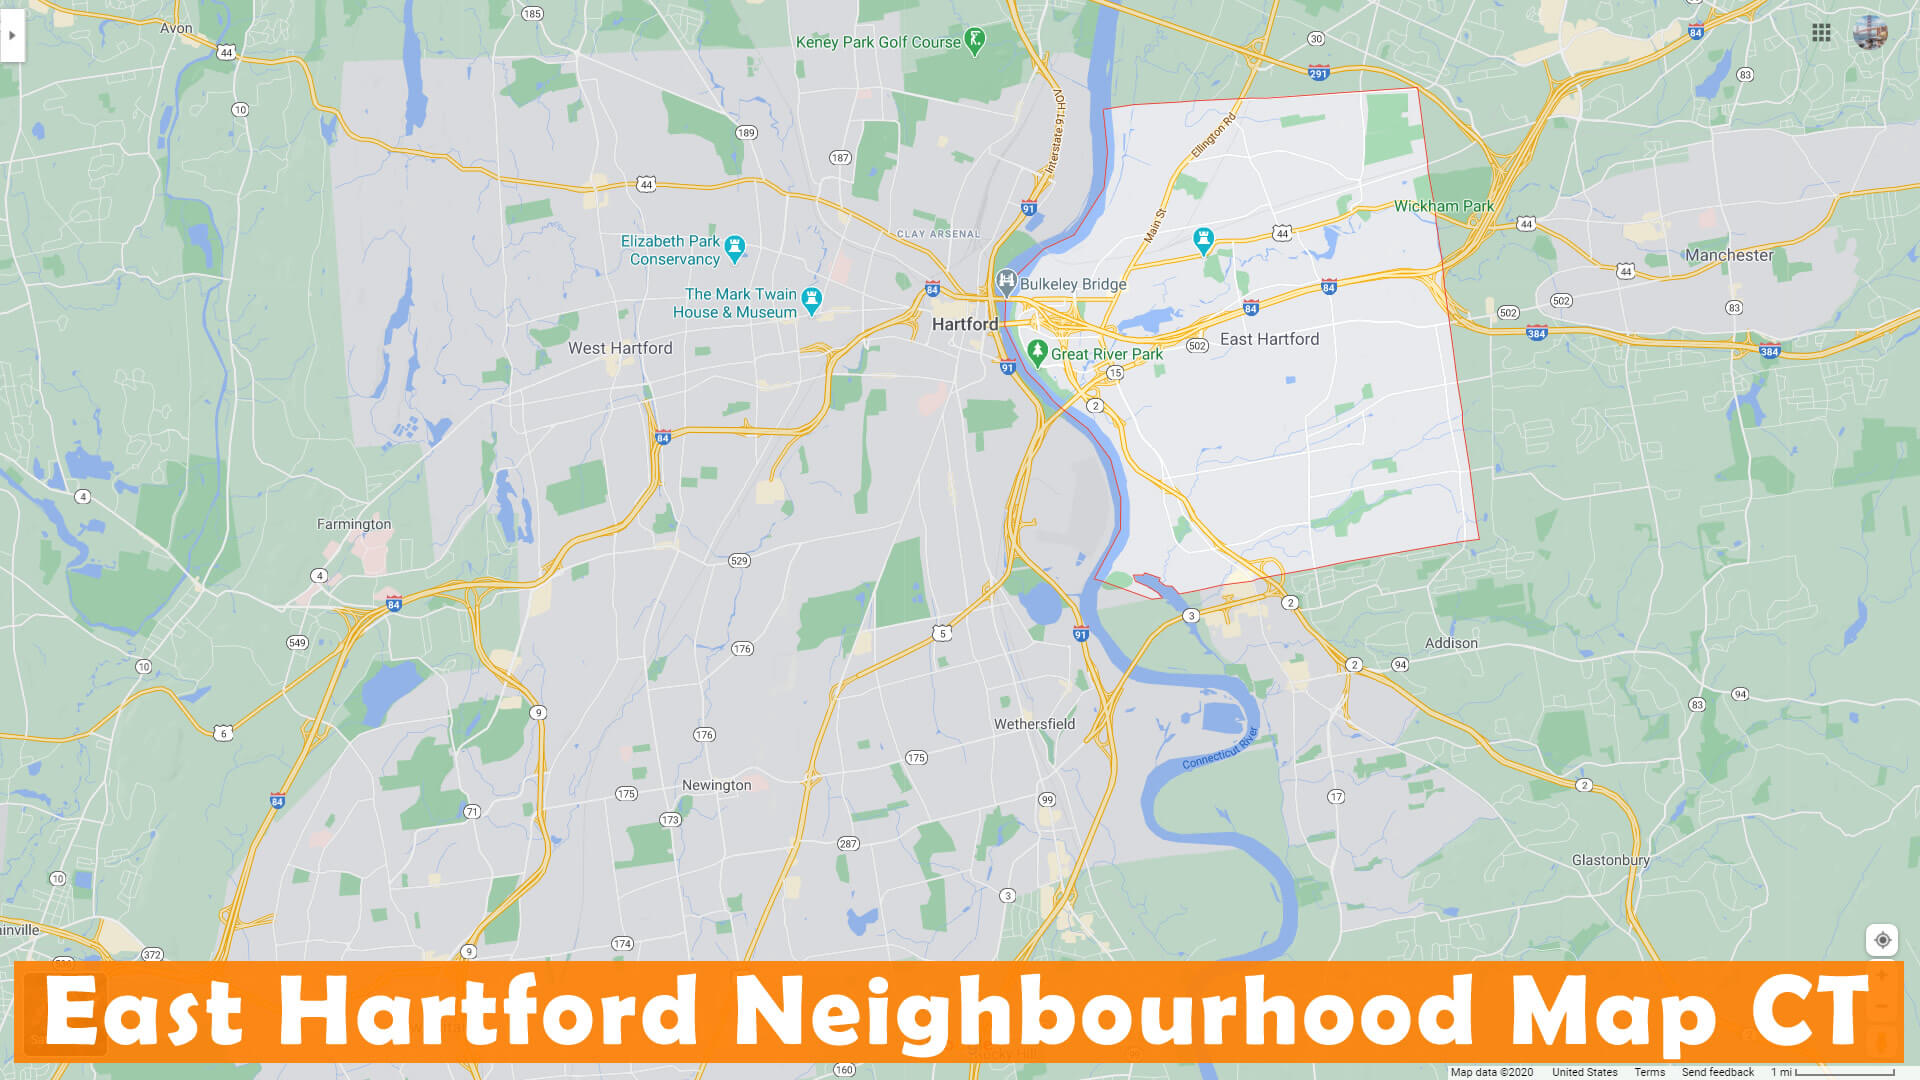 East Hartford Neighbourhood Map Connecticut